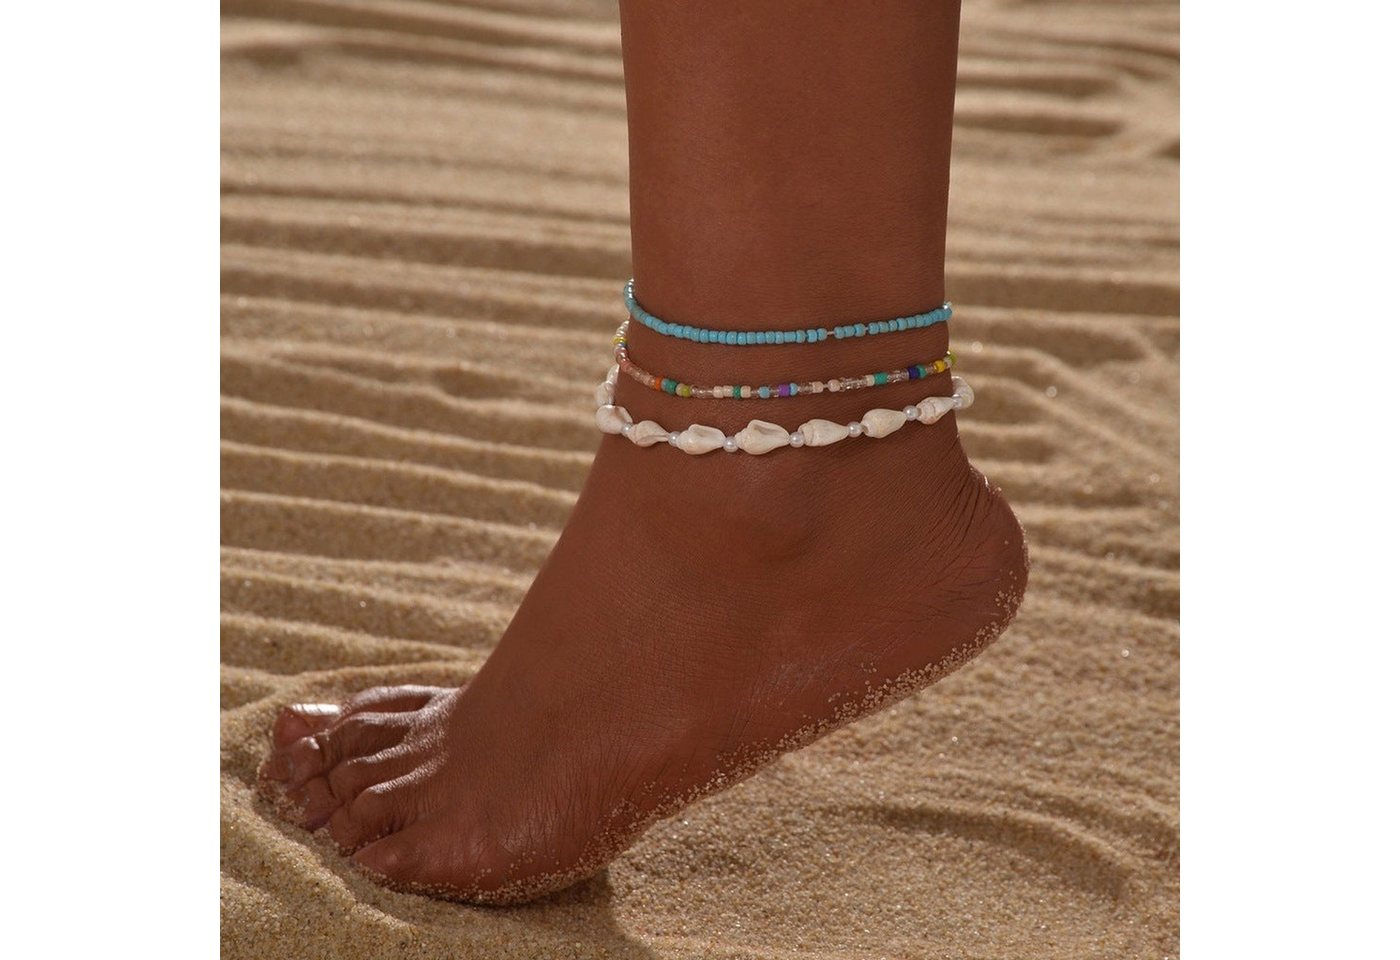 YRIIOMO Fußkette Böhmisches Resort-Stil-Muschel zufällige Farbe, Reisperlen geflochtenes elastisches Fußkettchen 3-teiliges Set von YRIIOMO